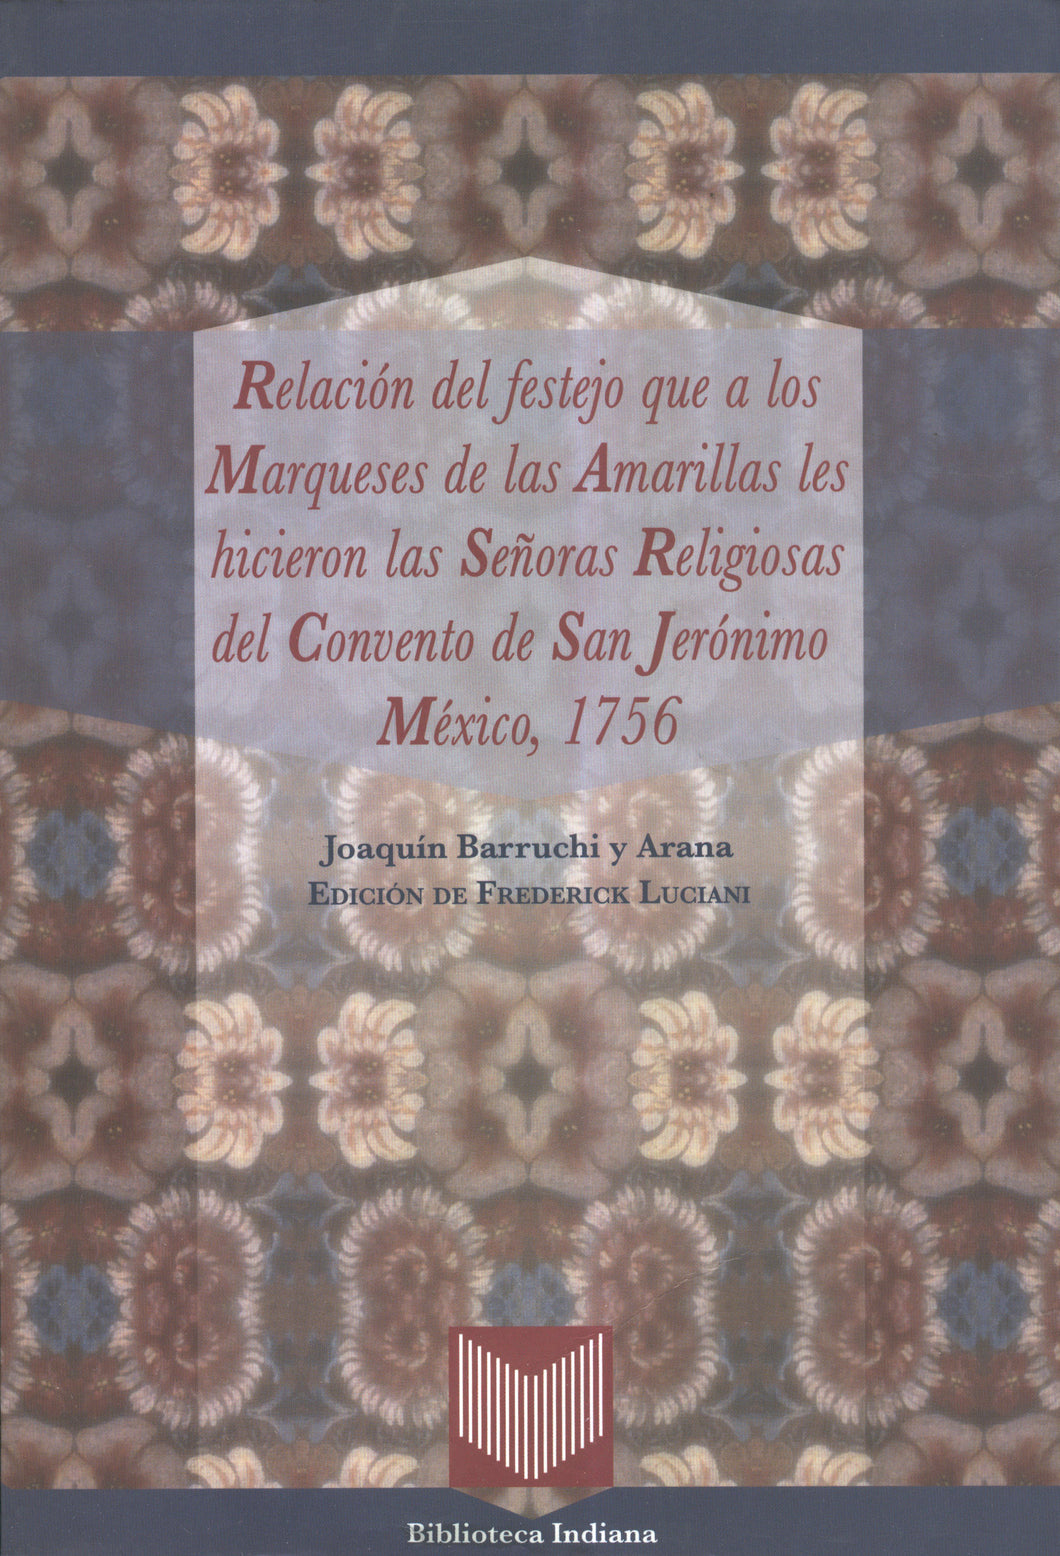 Relación del festejo que a los Marqueses de las Amarillas-Joaquín Barruchi y Arana y Frederick Luciani (ed.)